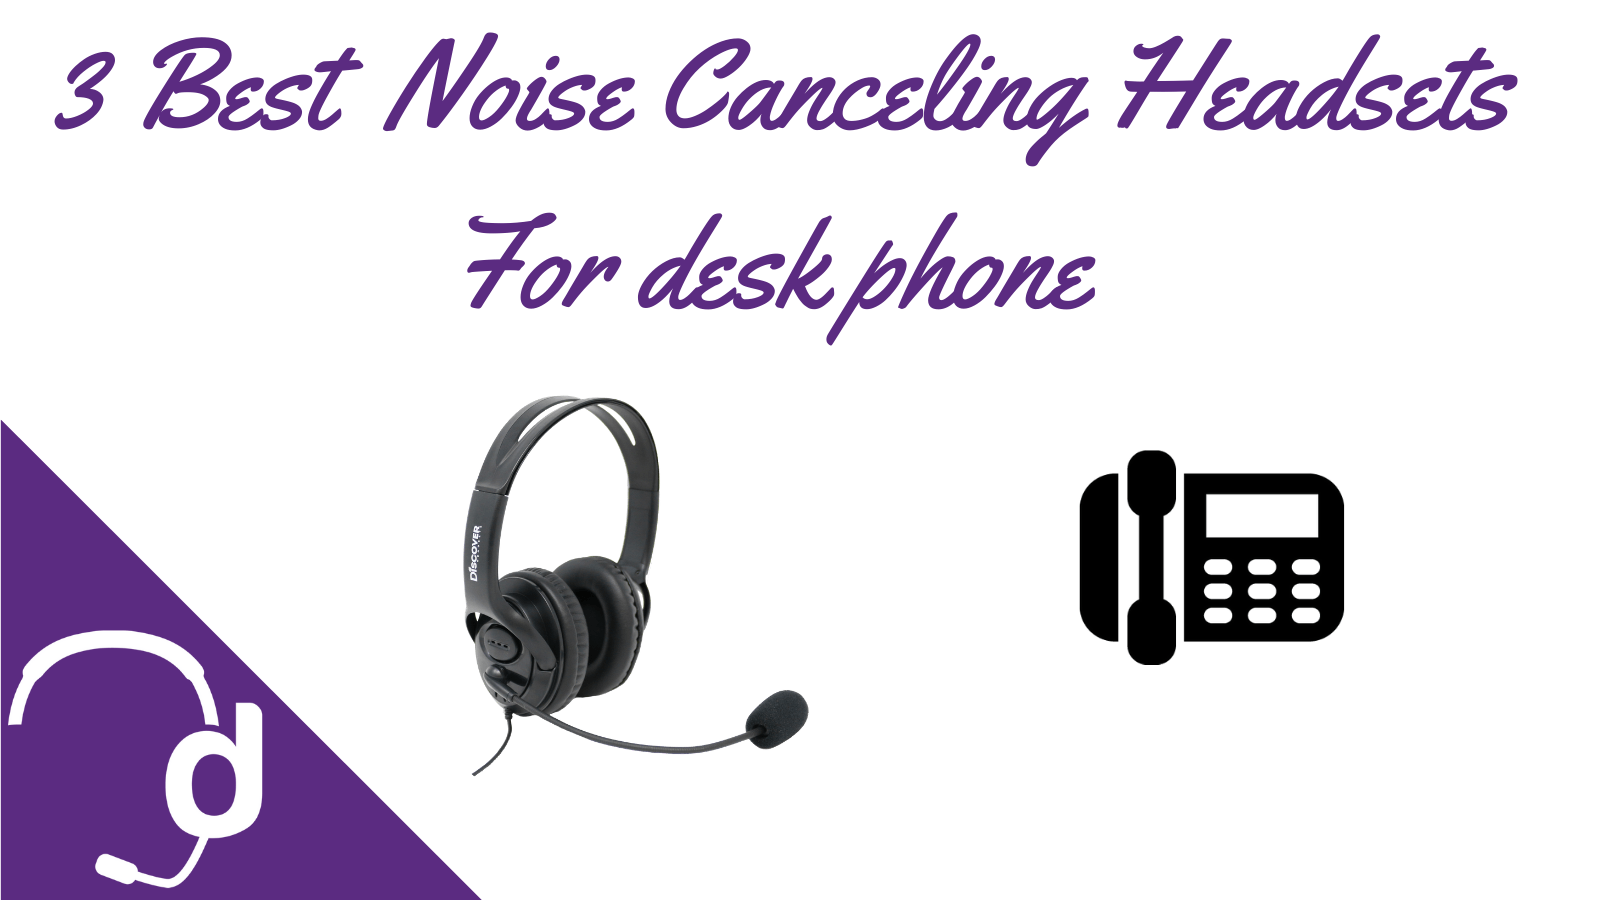 3 Best Noise Canceling Headsets For Call Centers Using Desk Phones - Headset Advisor